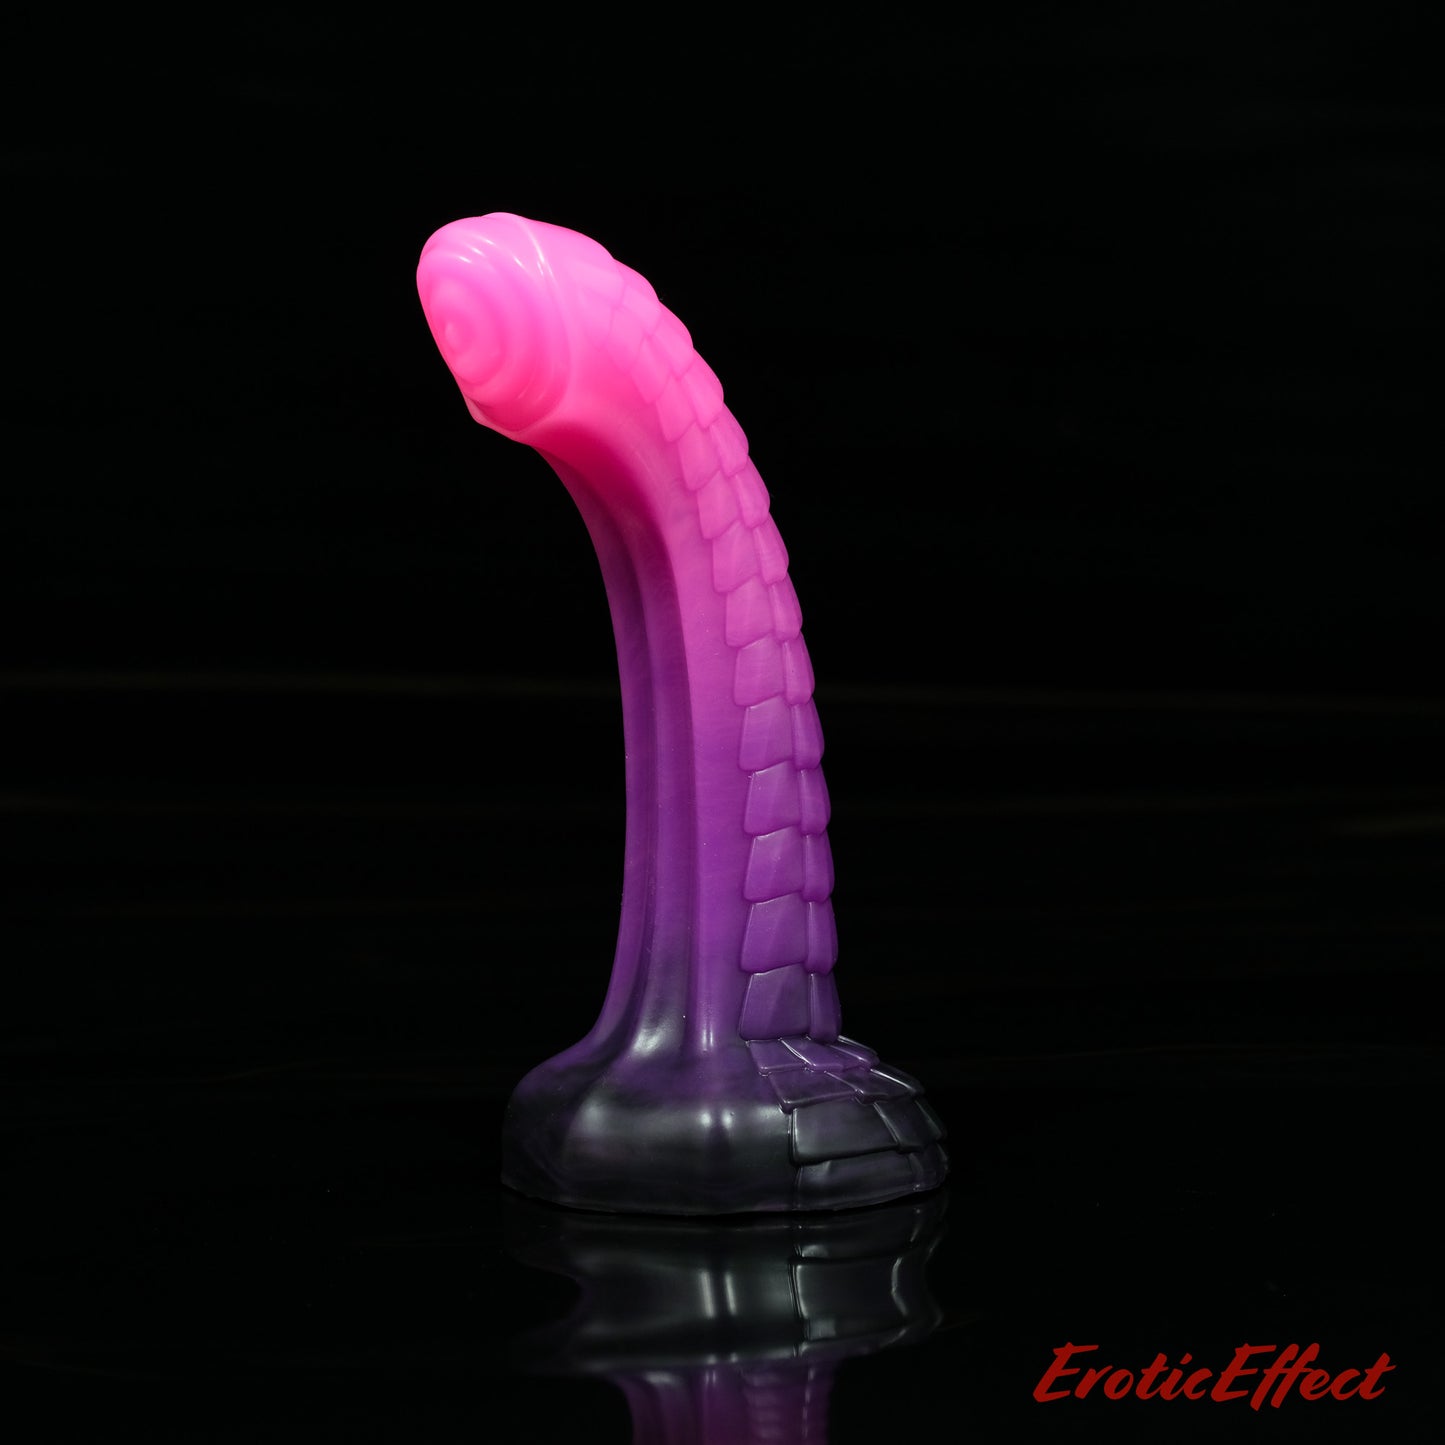 Raithor Dragon Fantasy Silicone Dildo - Pink Goth Colourway - Made to Order